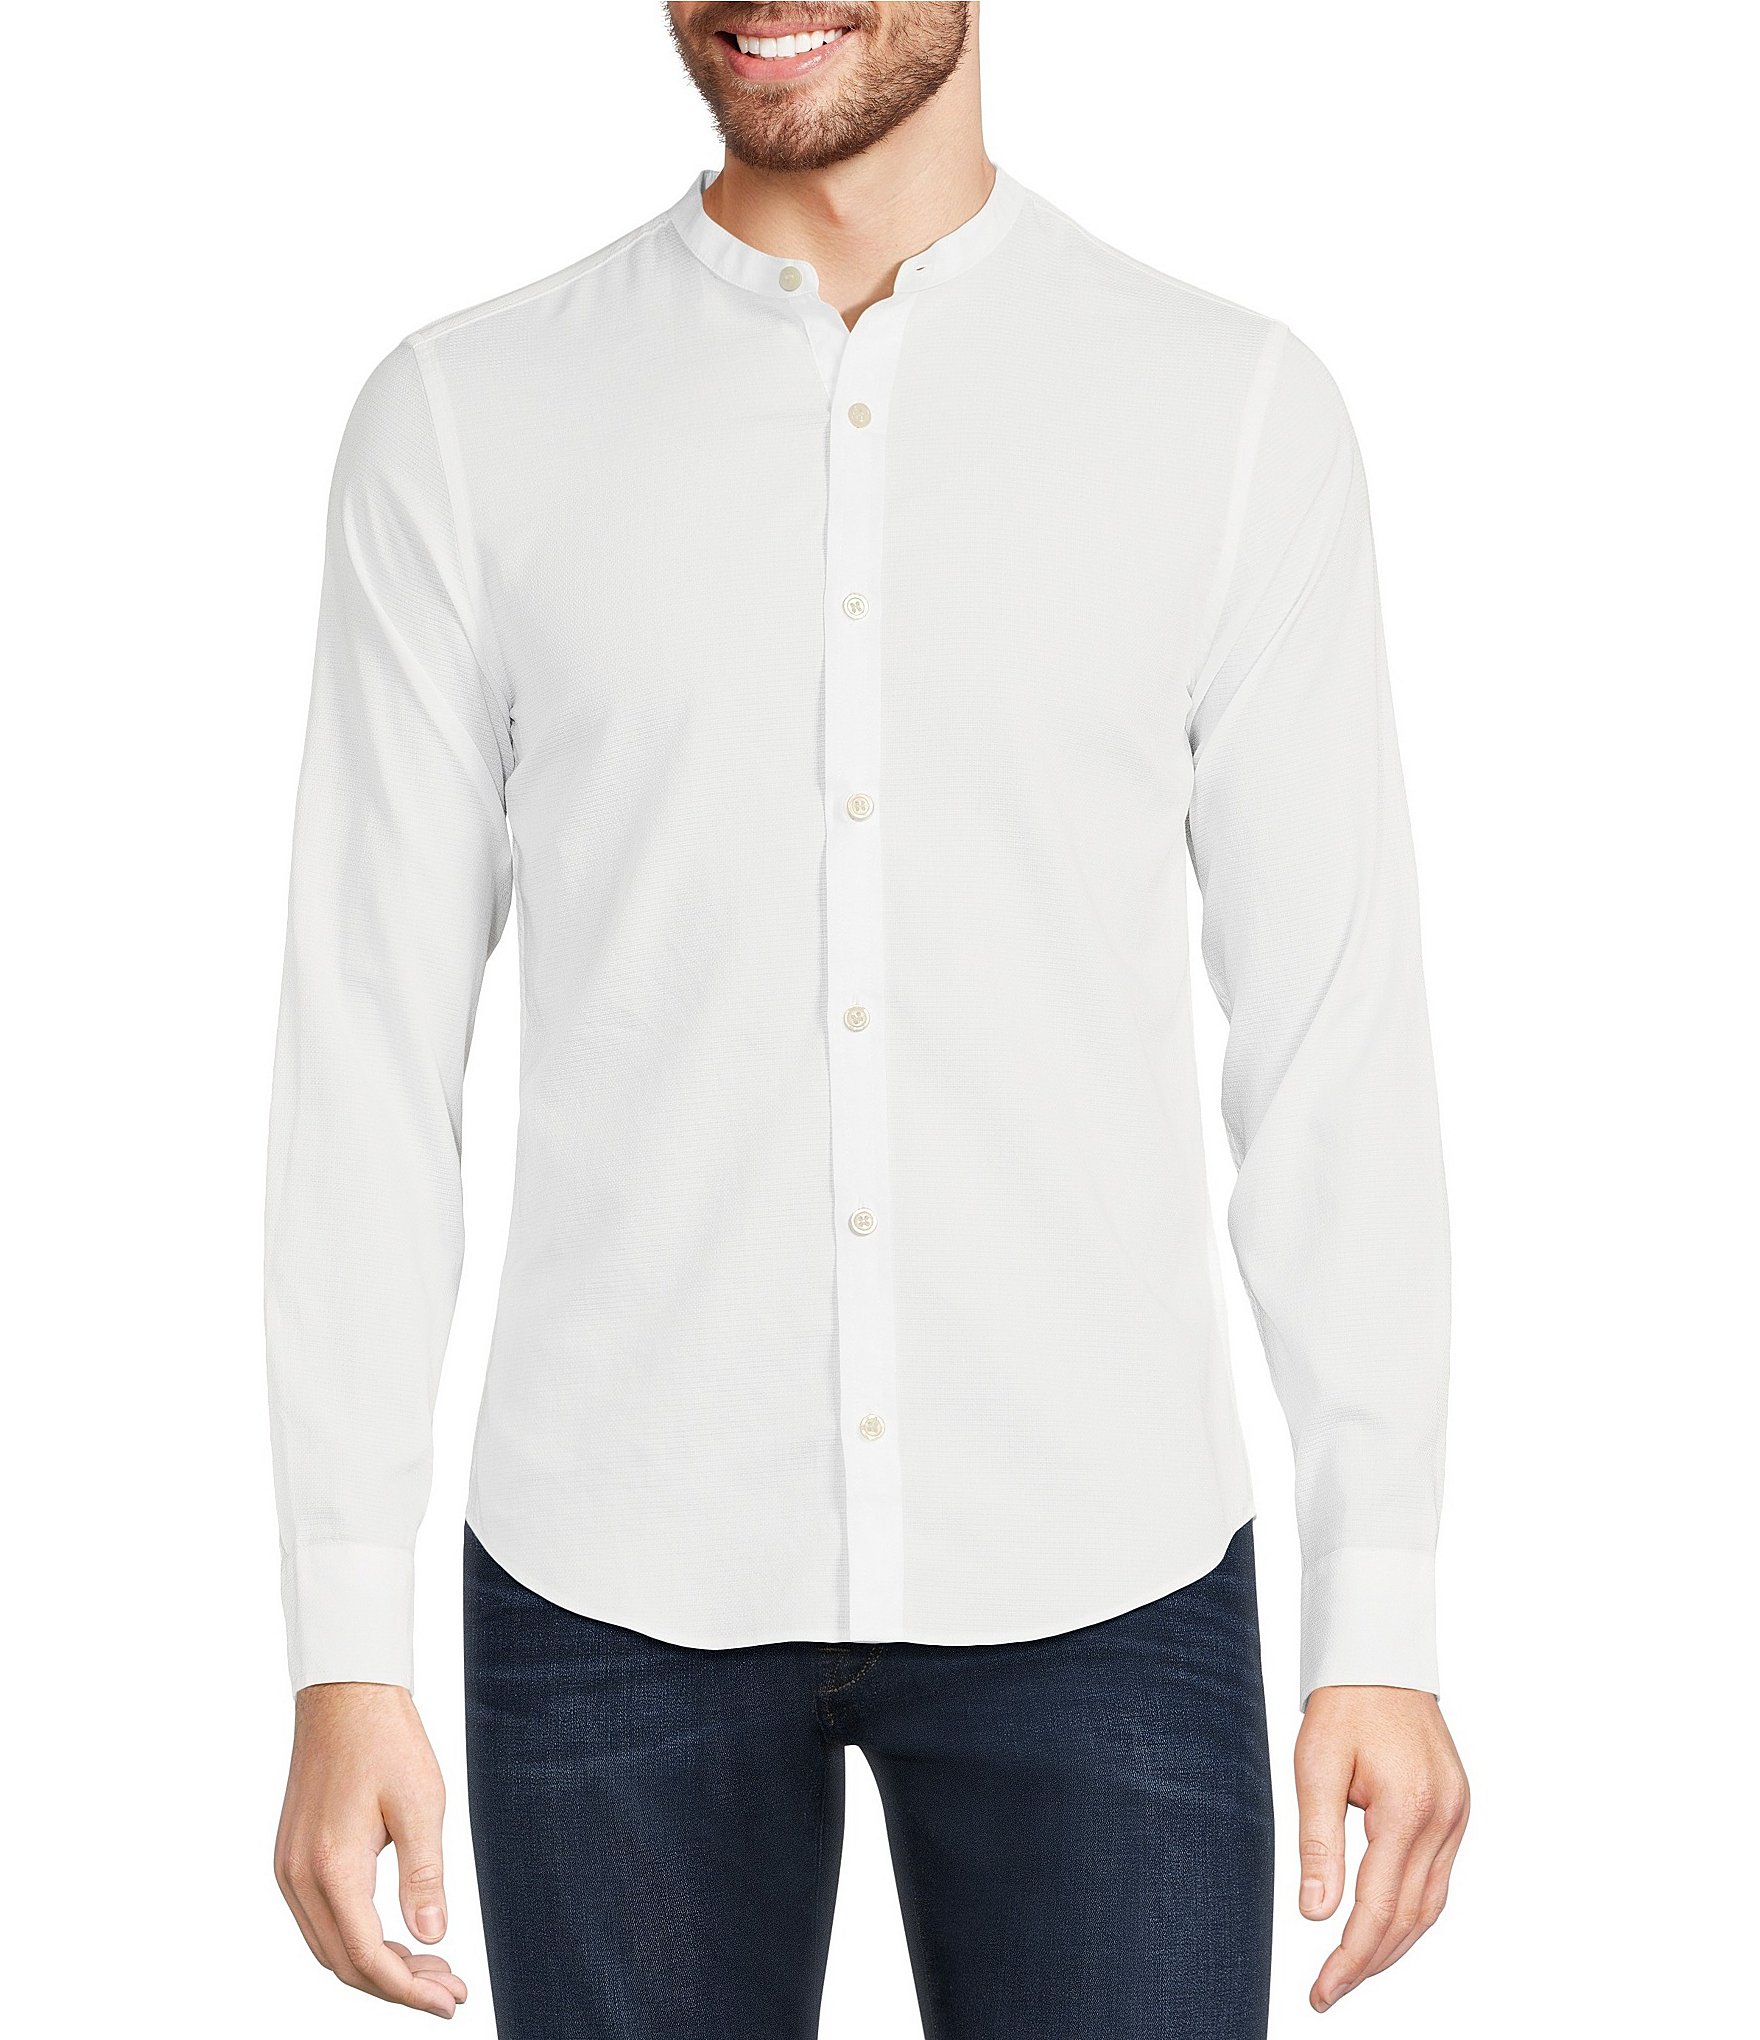 Stiffcollar Mandarin Collar Shirts for men –